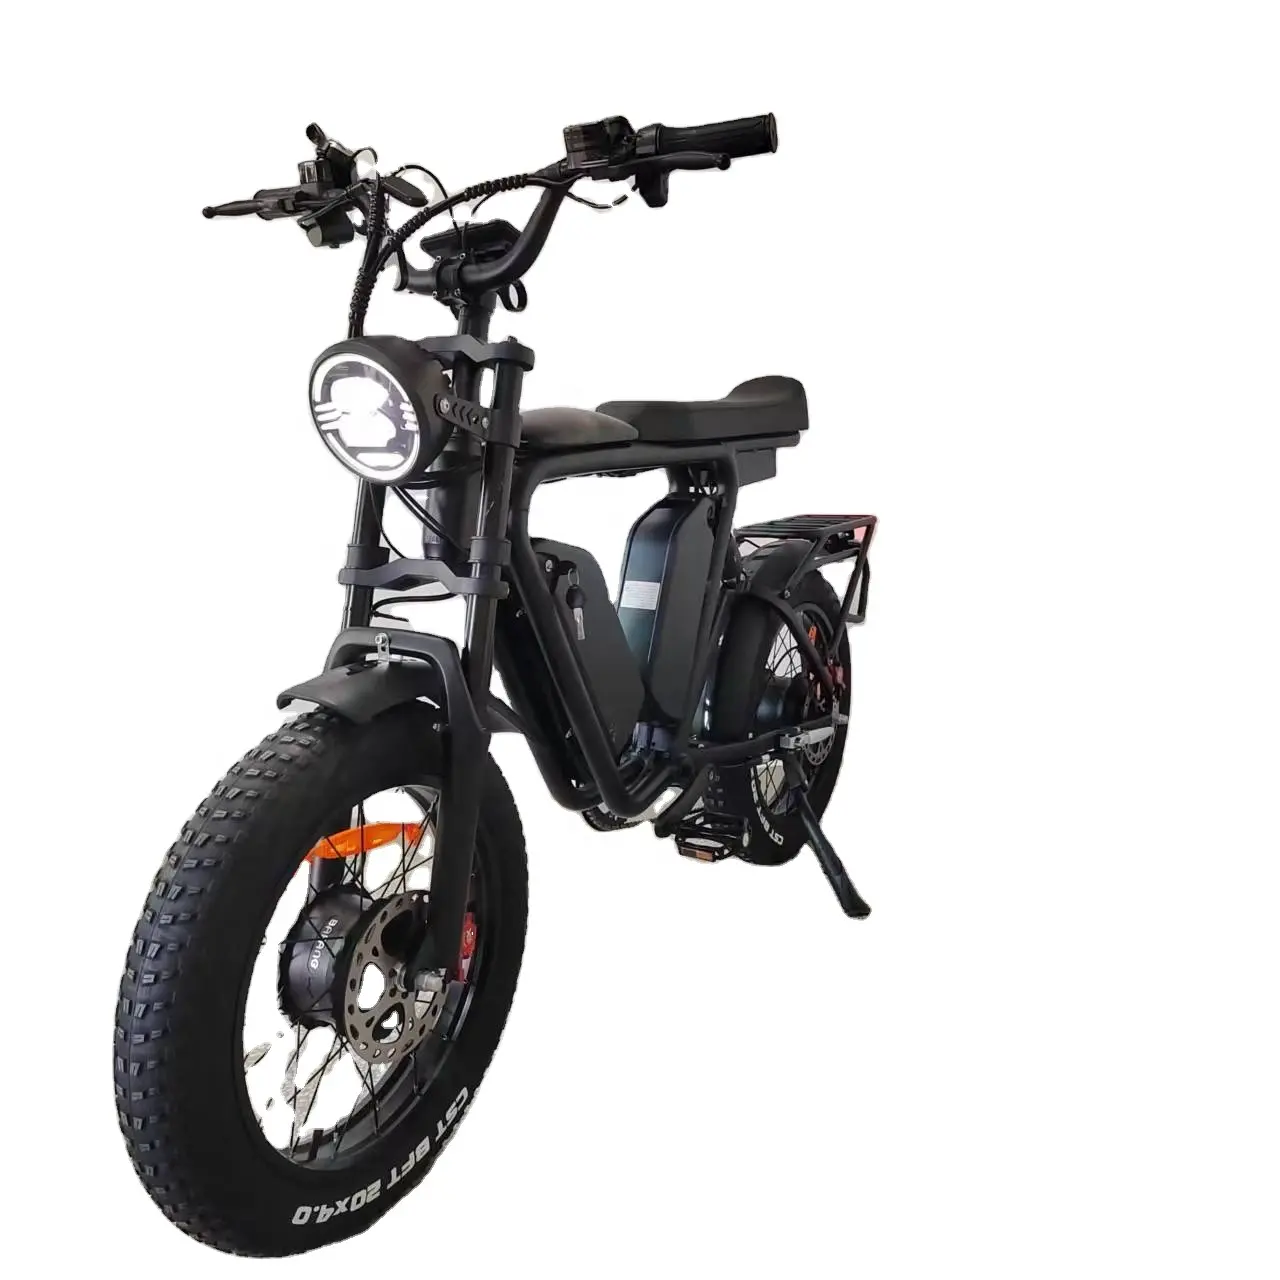 Ebike bafang doppio motore 48 v1000wx2 corea doppia batteria 44Ah freno a olio sospensione completa sedile lungo pneumatico grasso bicicletta elettrica veloce